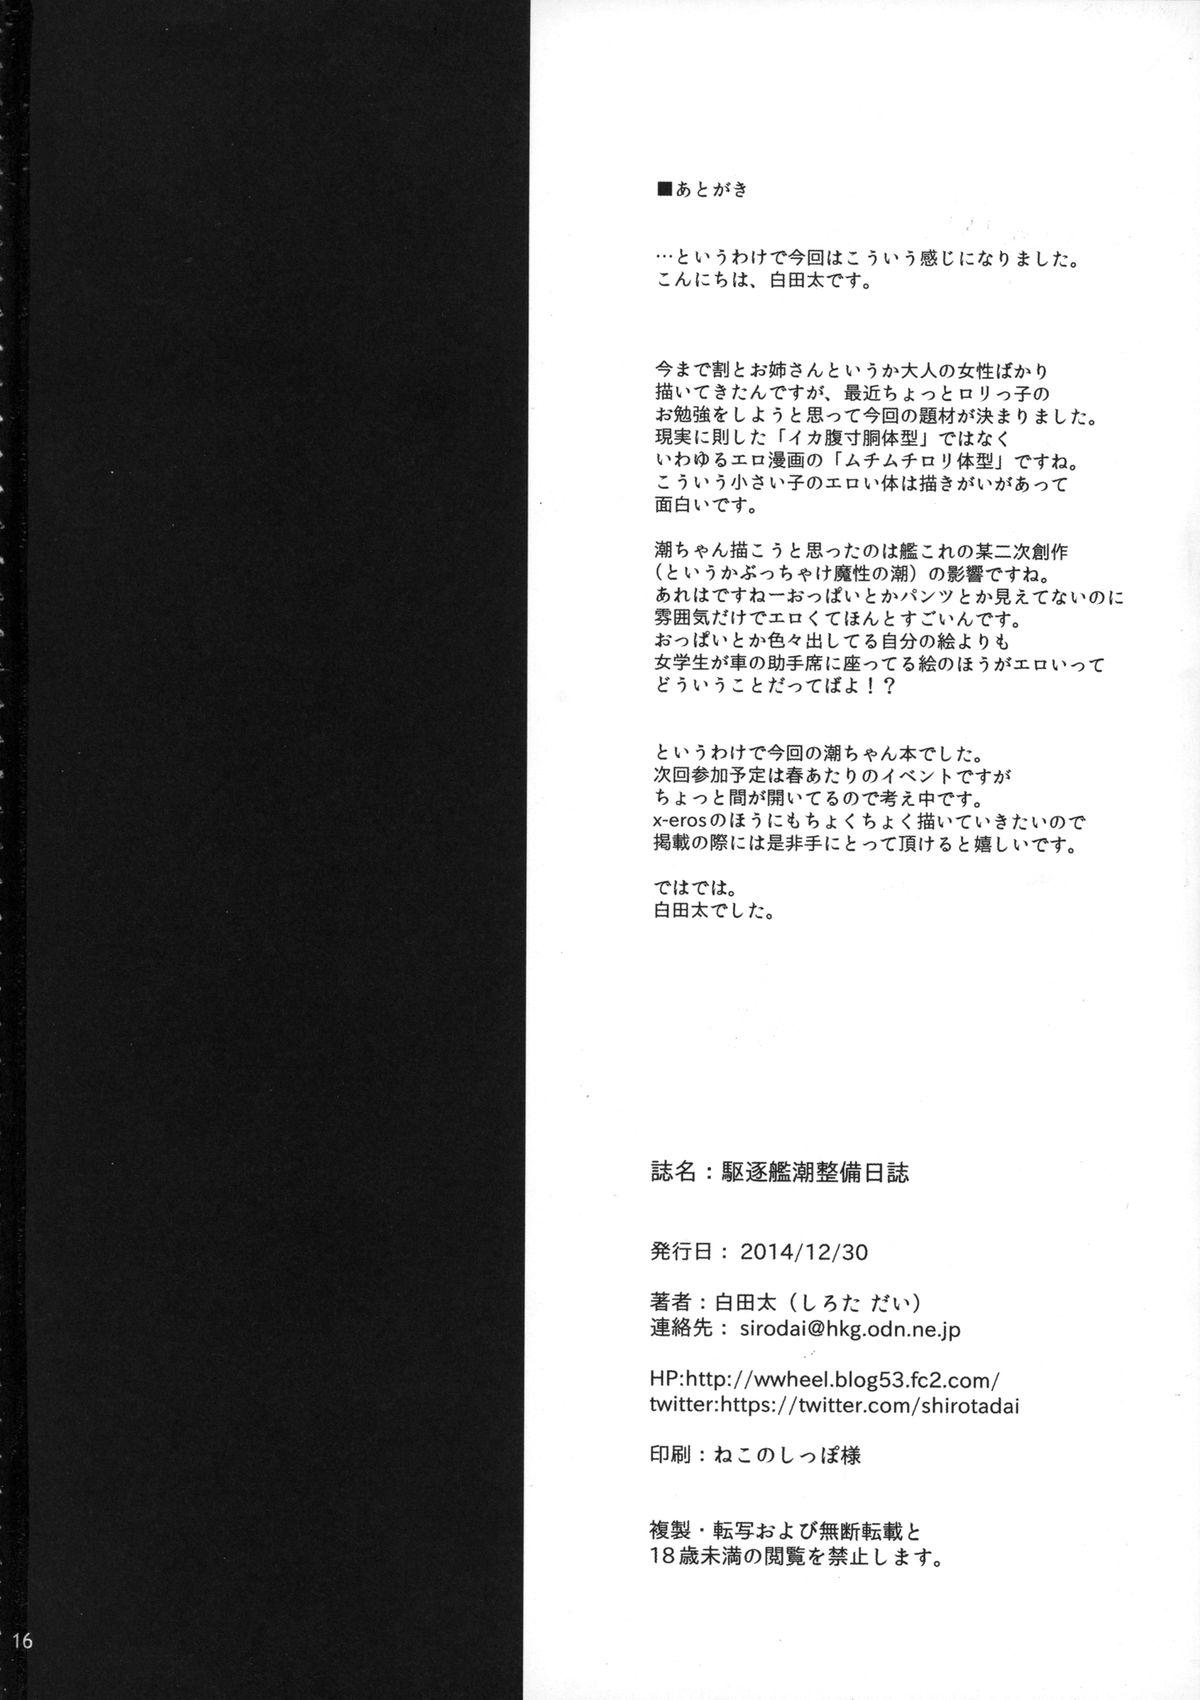 Twinkstudios Kuchiku-kan Ushio Seibi Nisshi - Kantai collection Com - Page 17